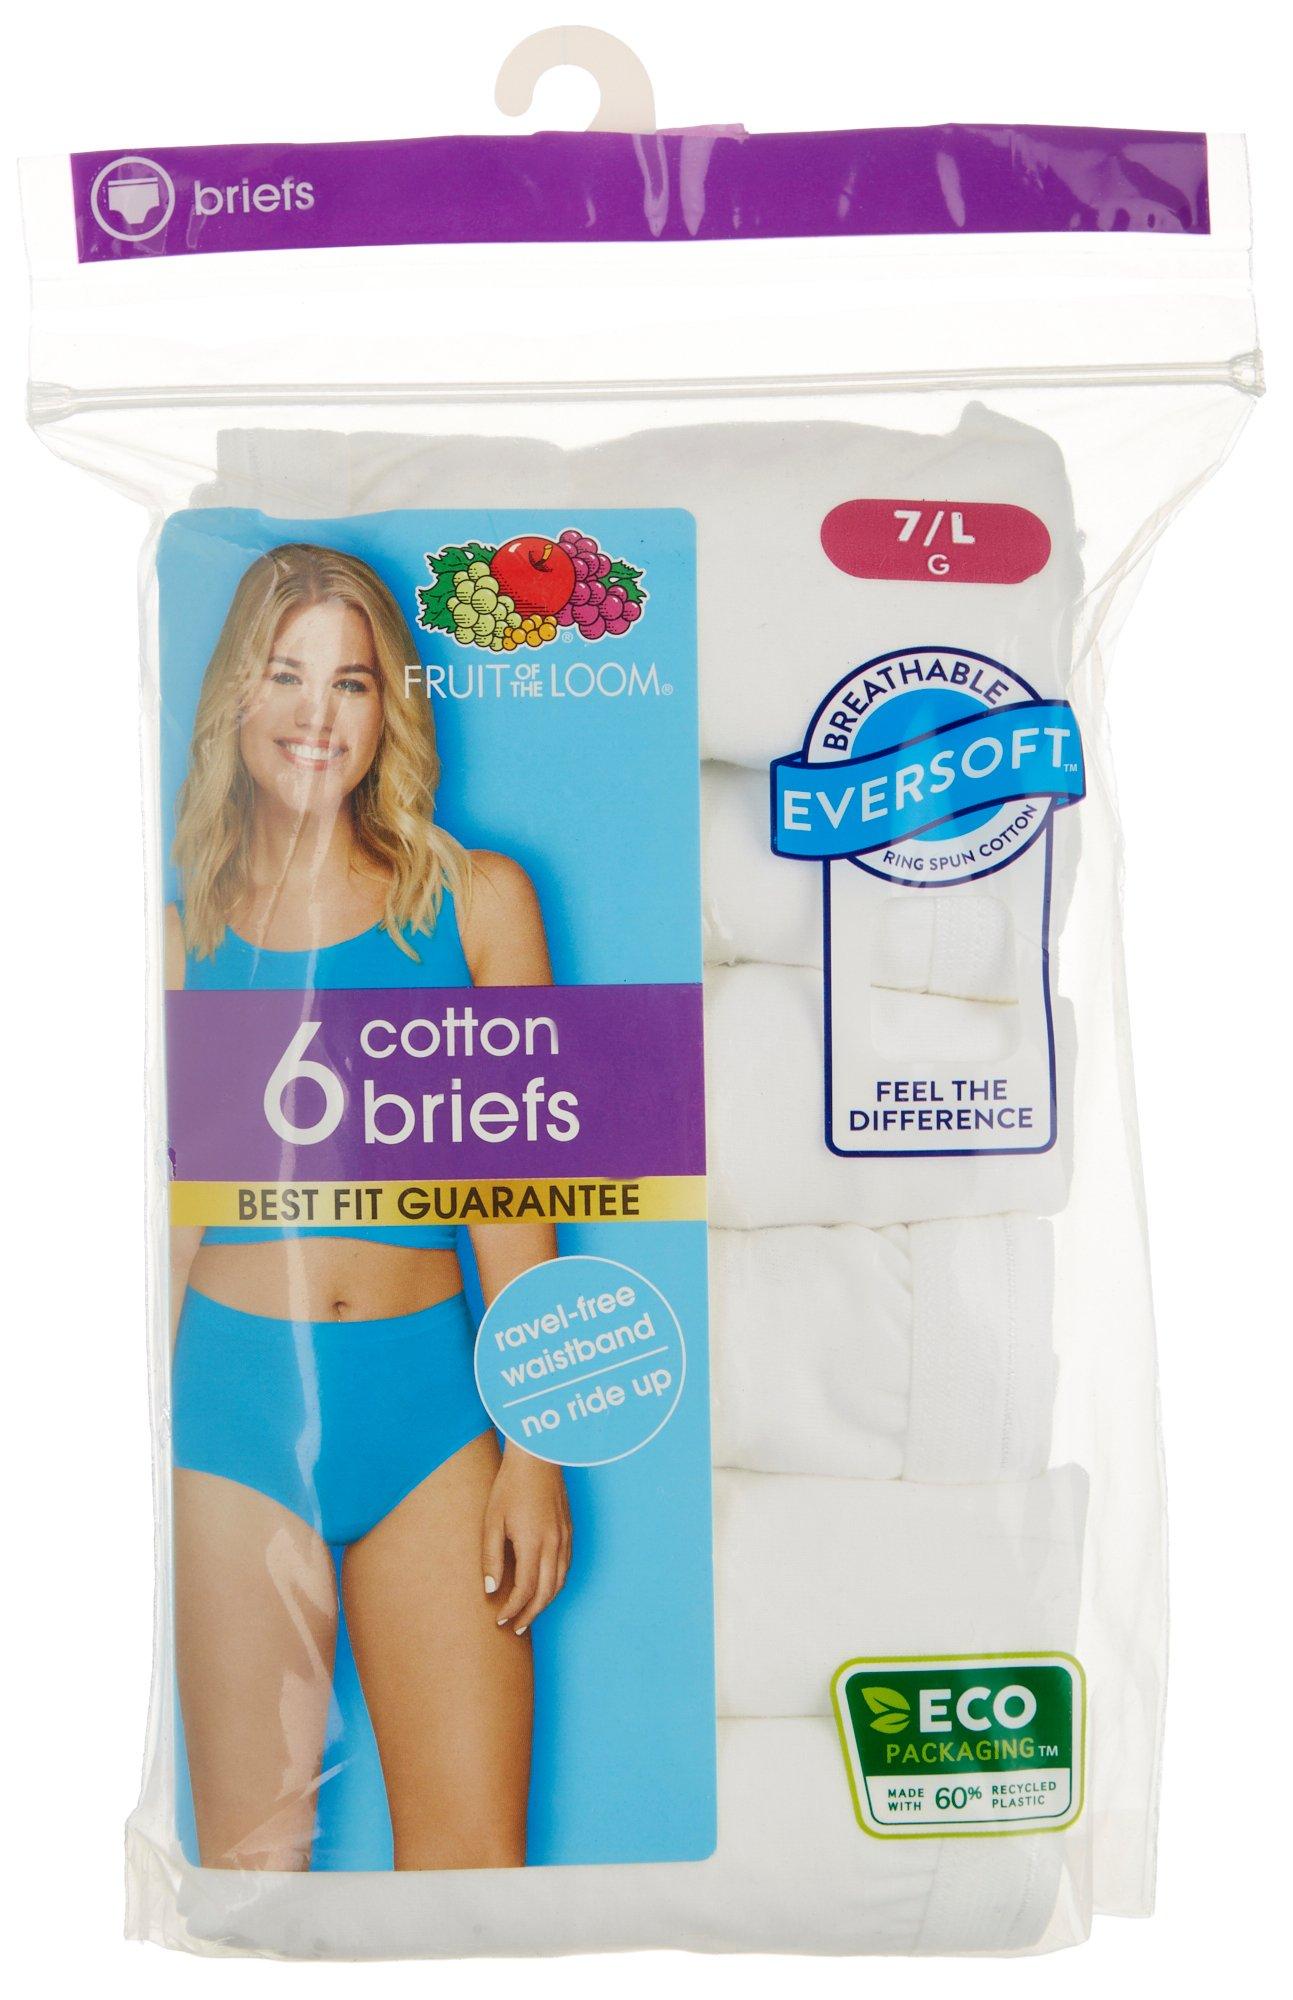 Classics Brief Underwear 3 Pack 9482